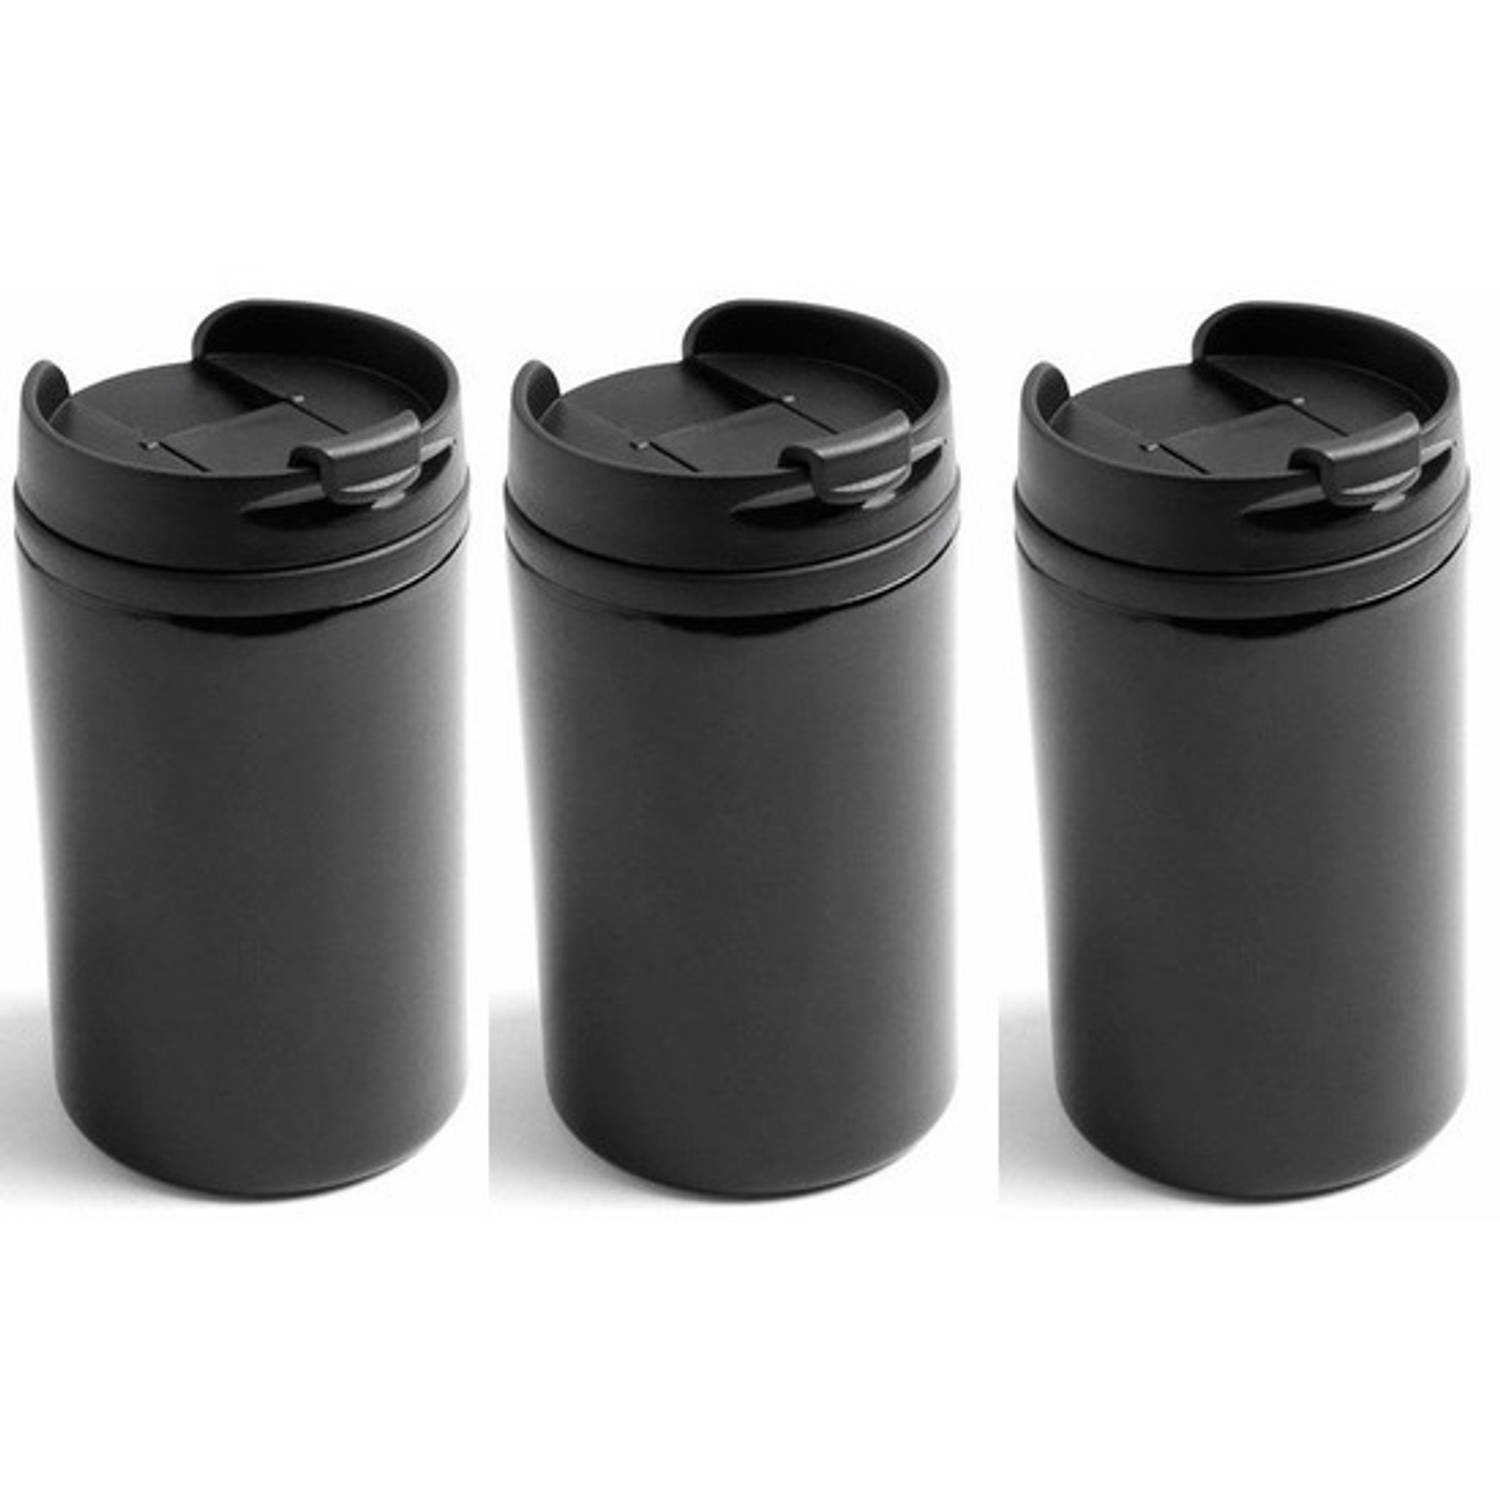 3x Isoleerbekers RVS metallic zwart 320 ml - Thermosbeker